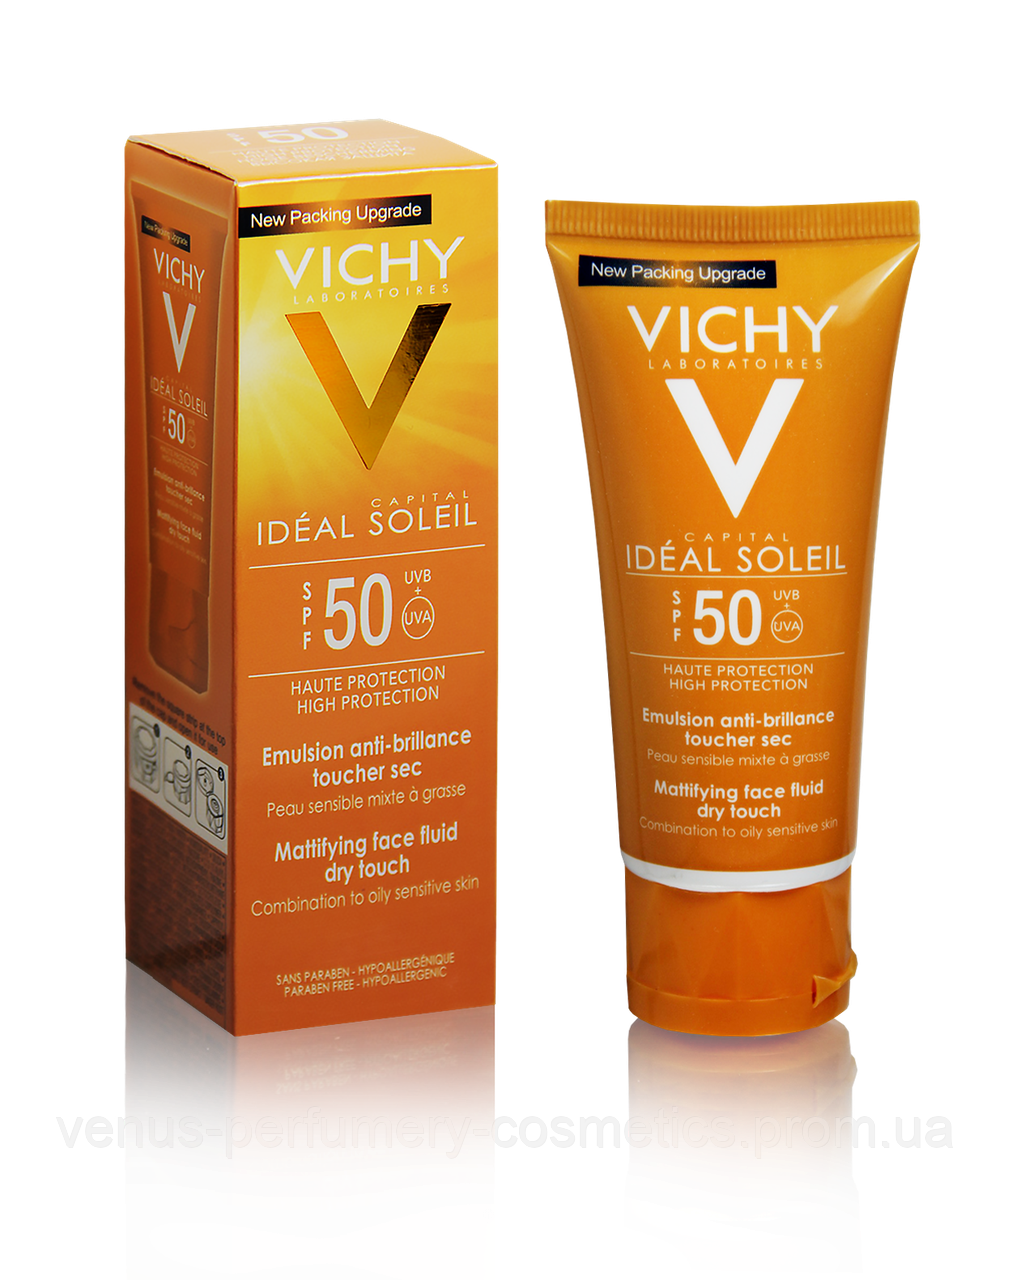 Vichy capital ideal soleil spf 50. Vichy Capital Soleil SPF 50.